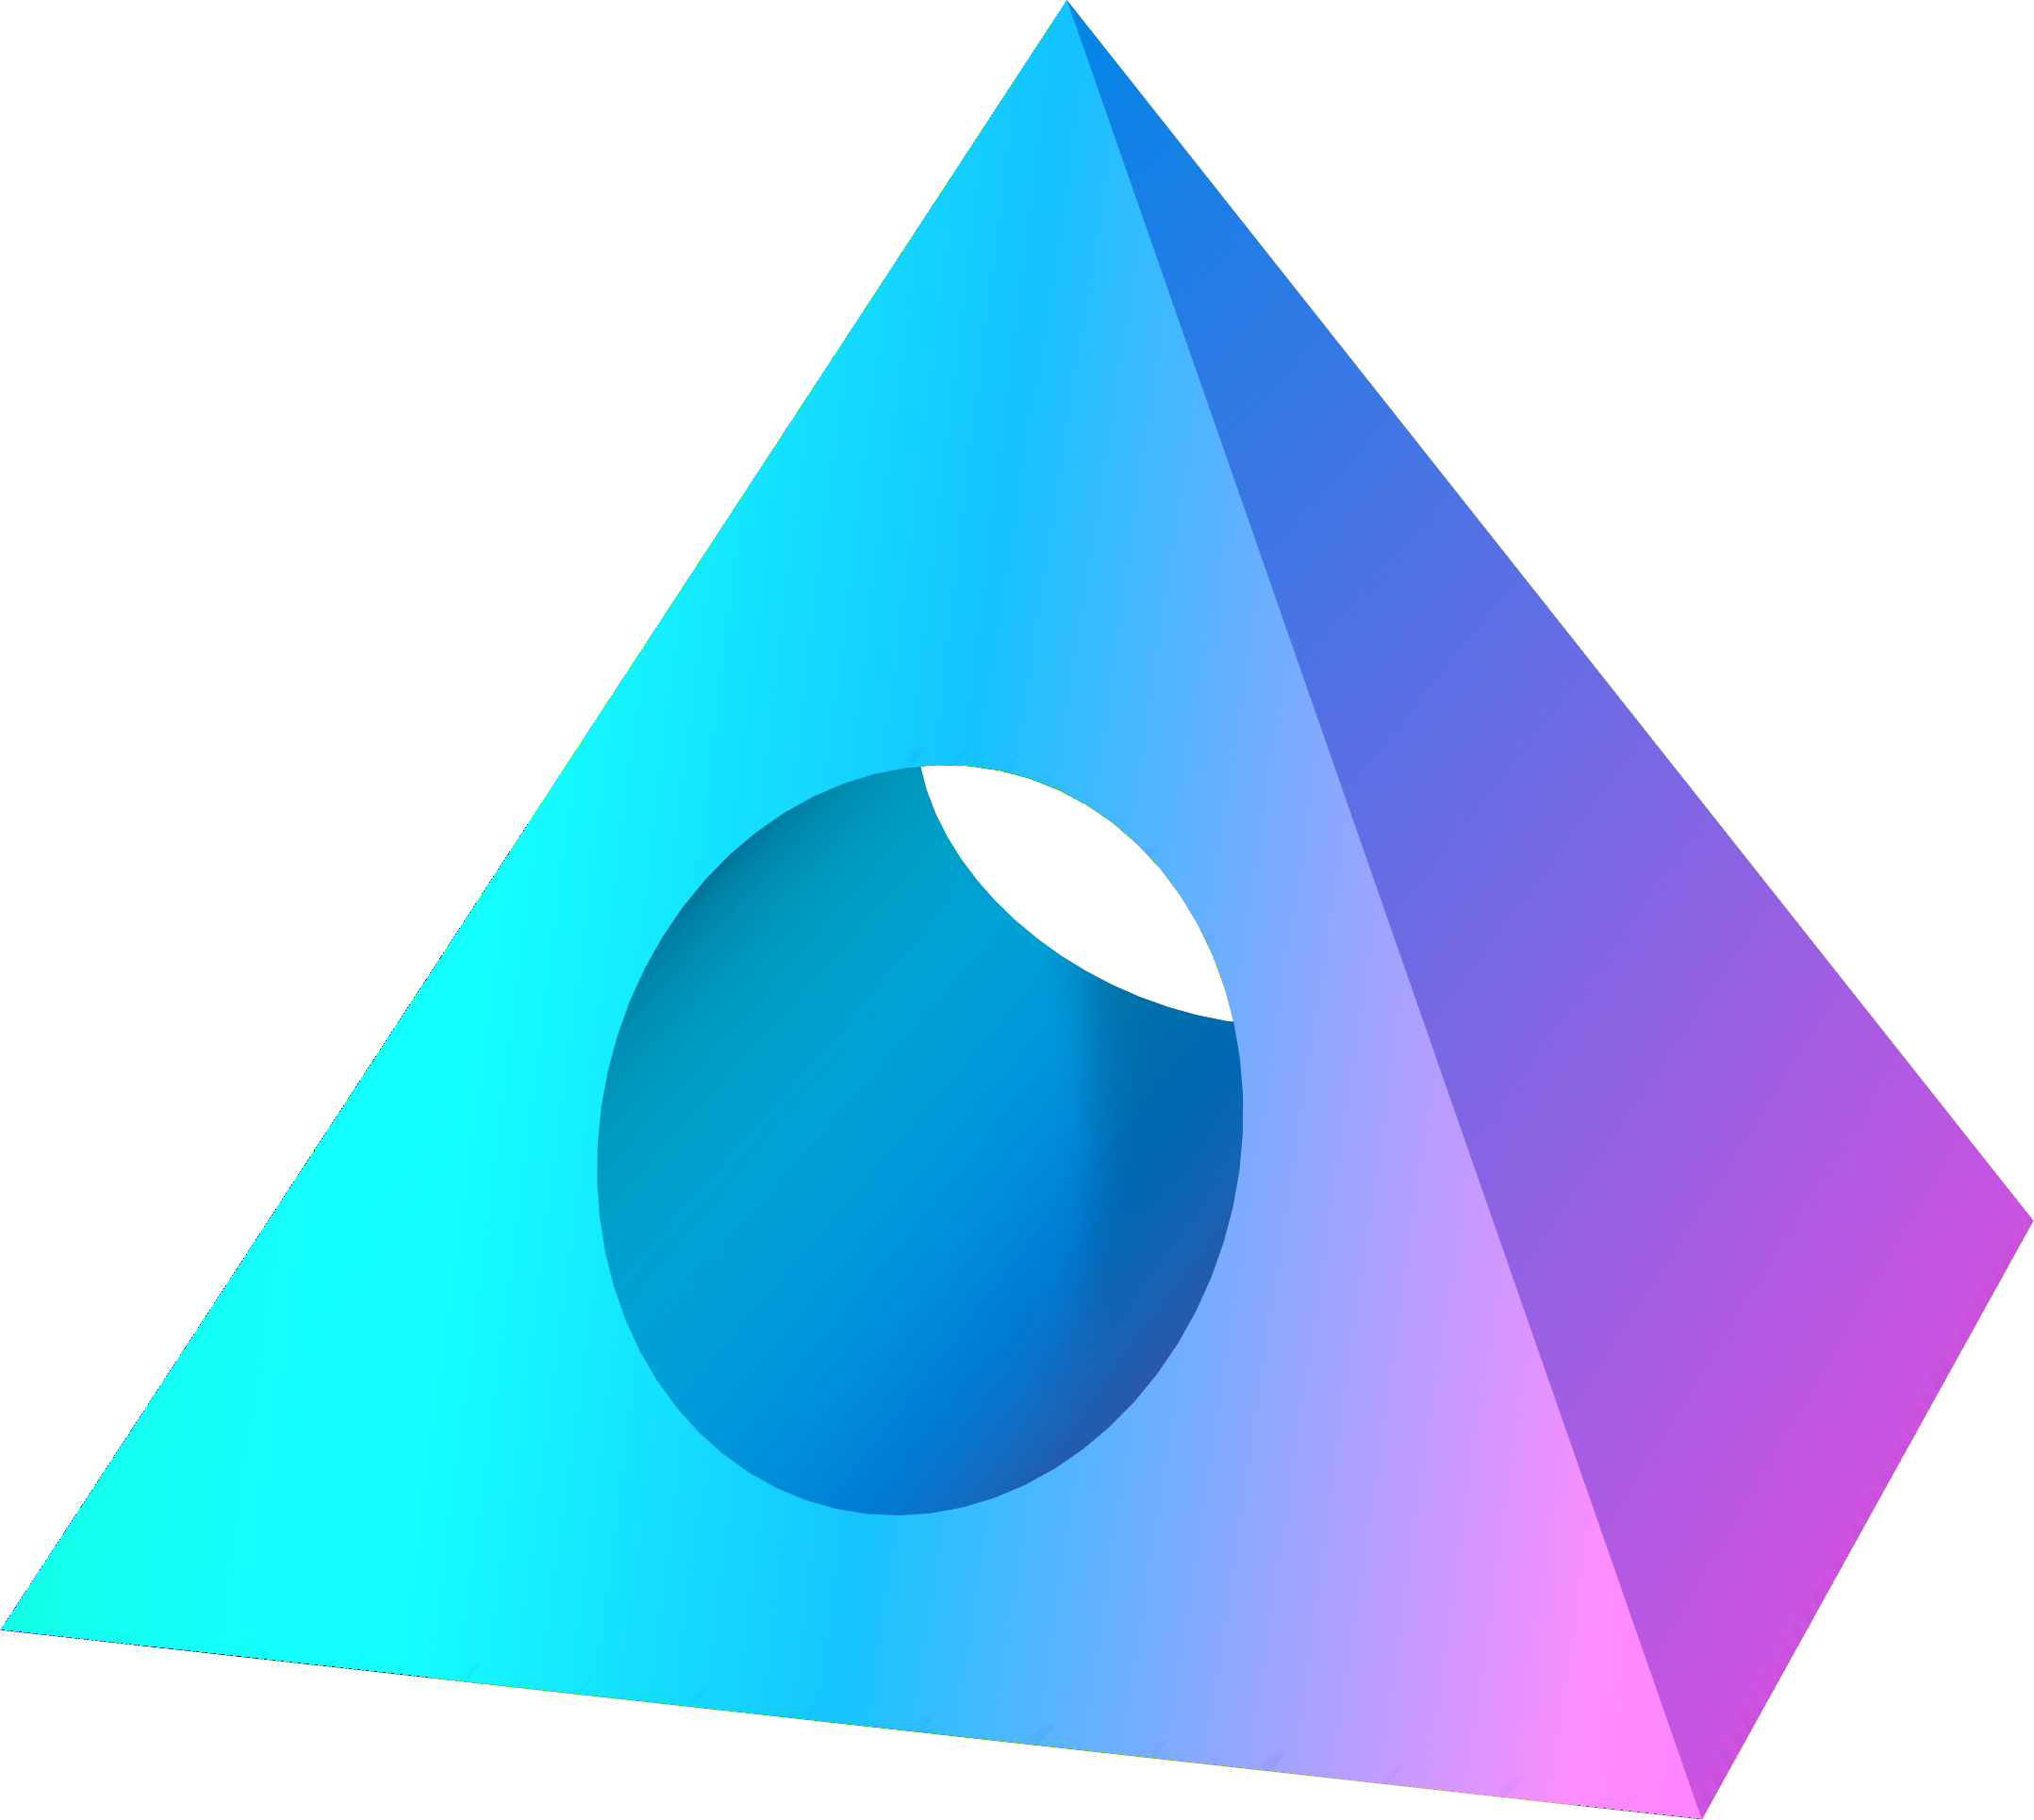 Atris Logo